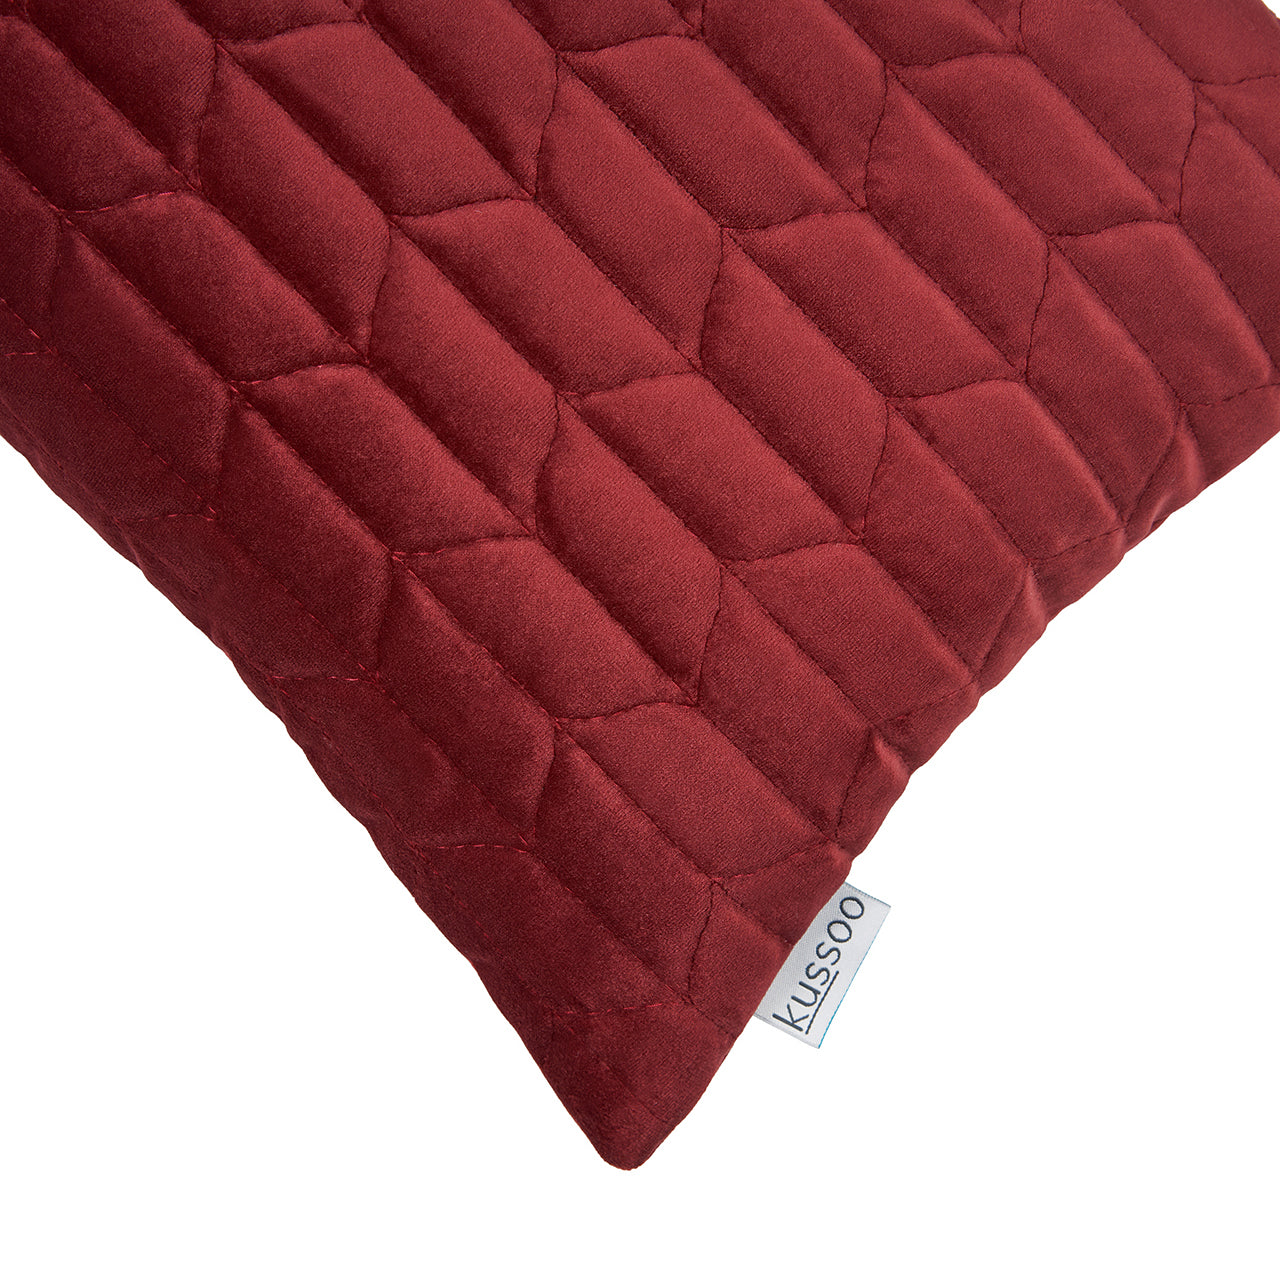 Kussen-fluweel-bordeaux-rood-30x50-detail